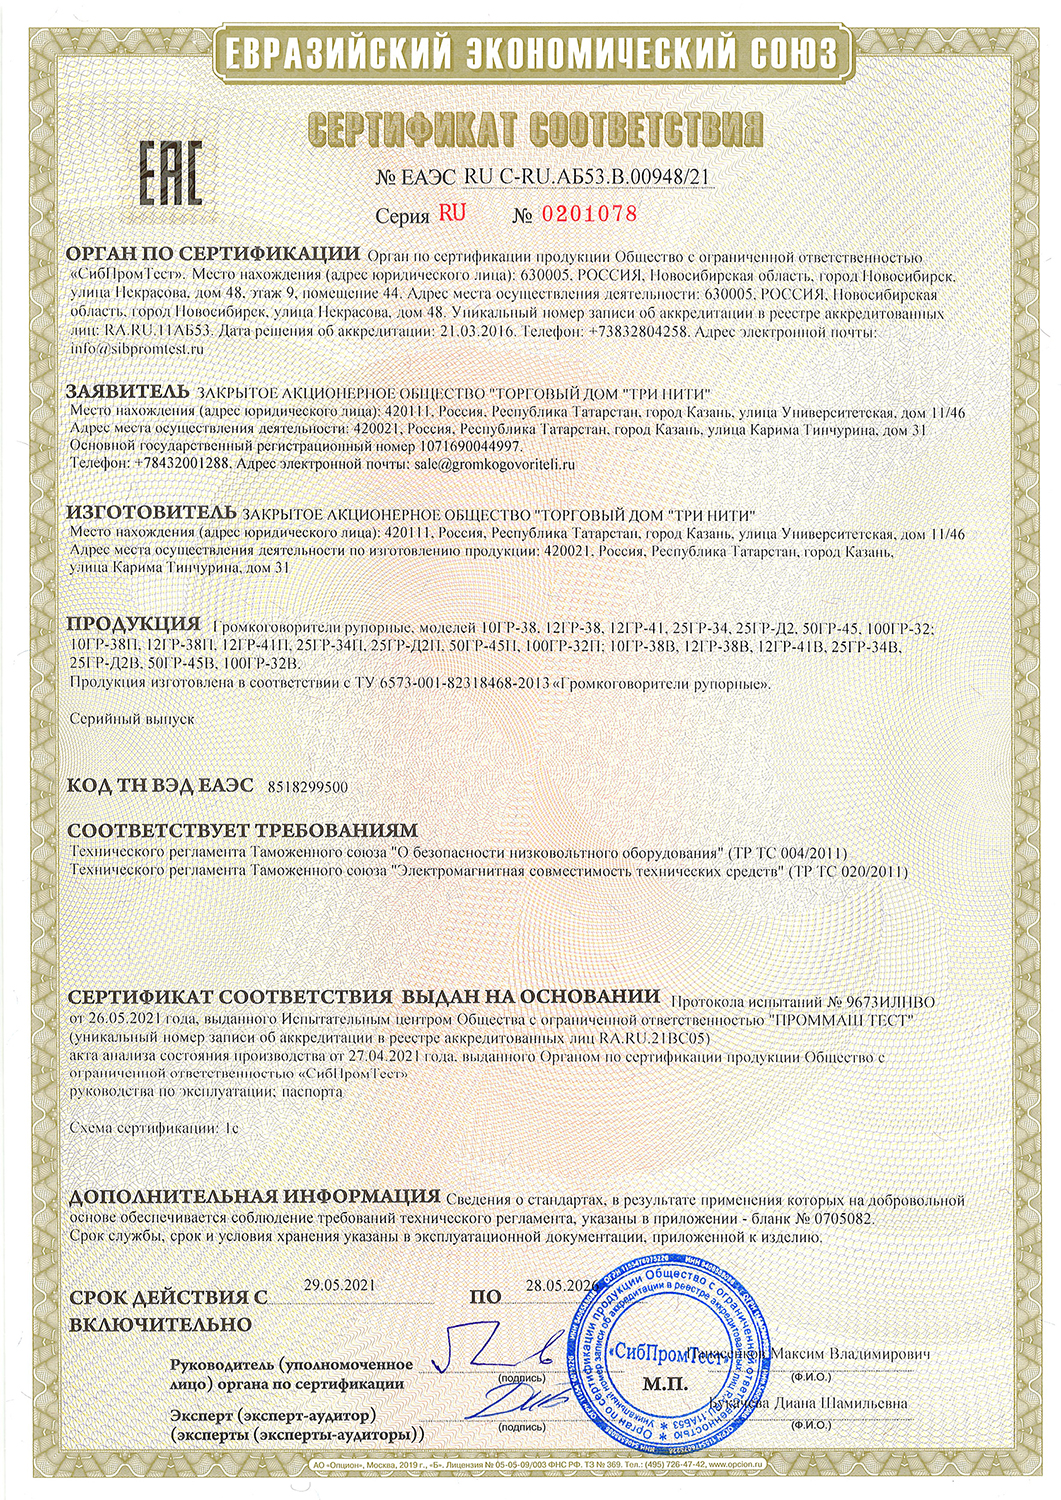 Евразийский экономический союз. Сертификат соответствия № 0201078 до 28.05.2026 г.